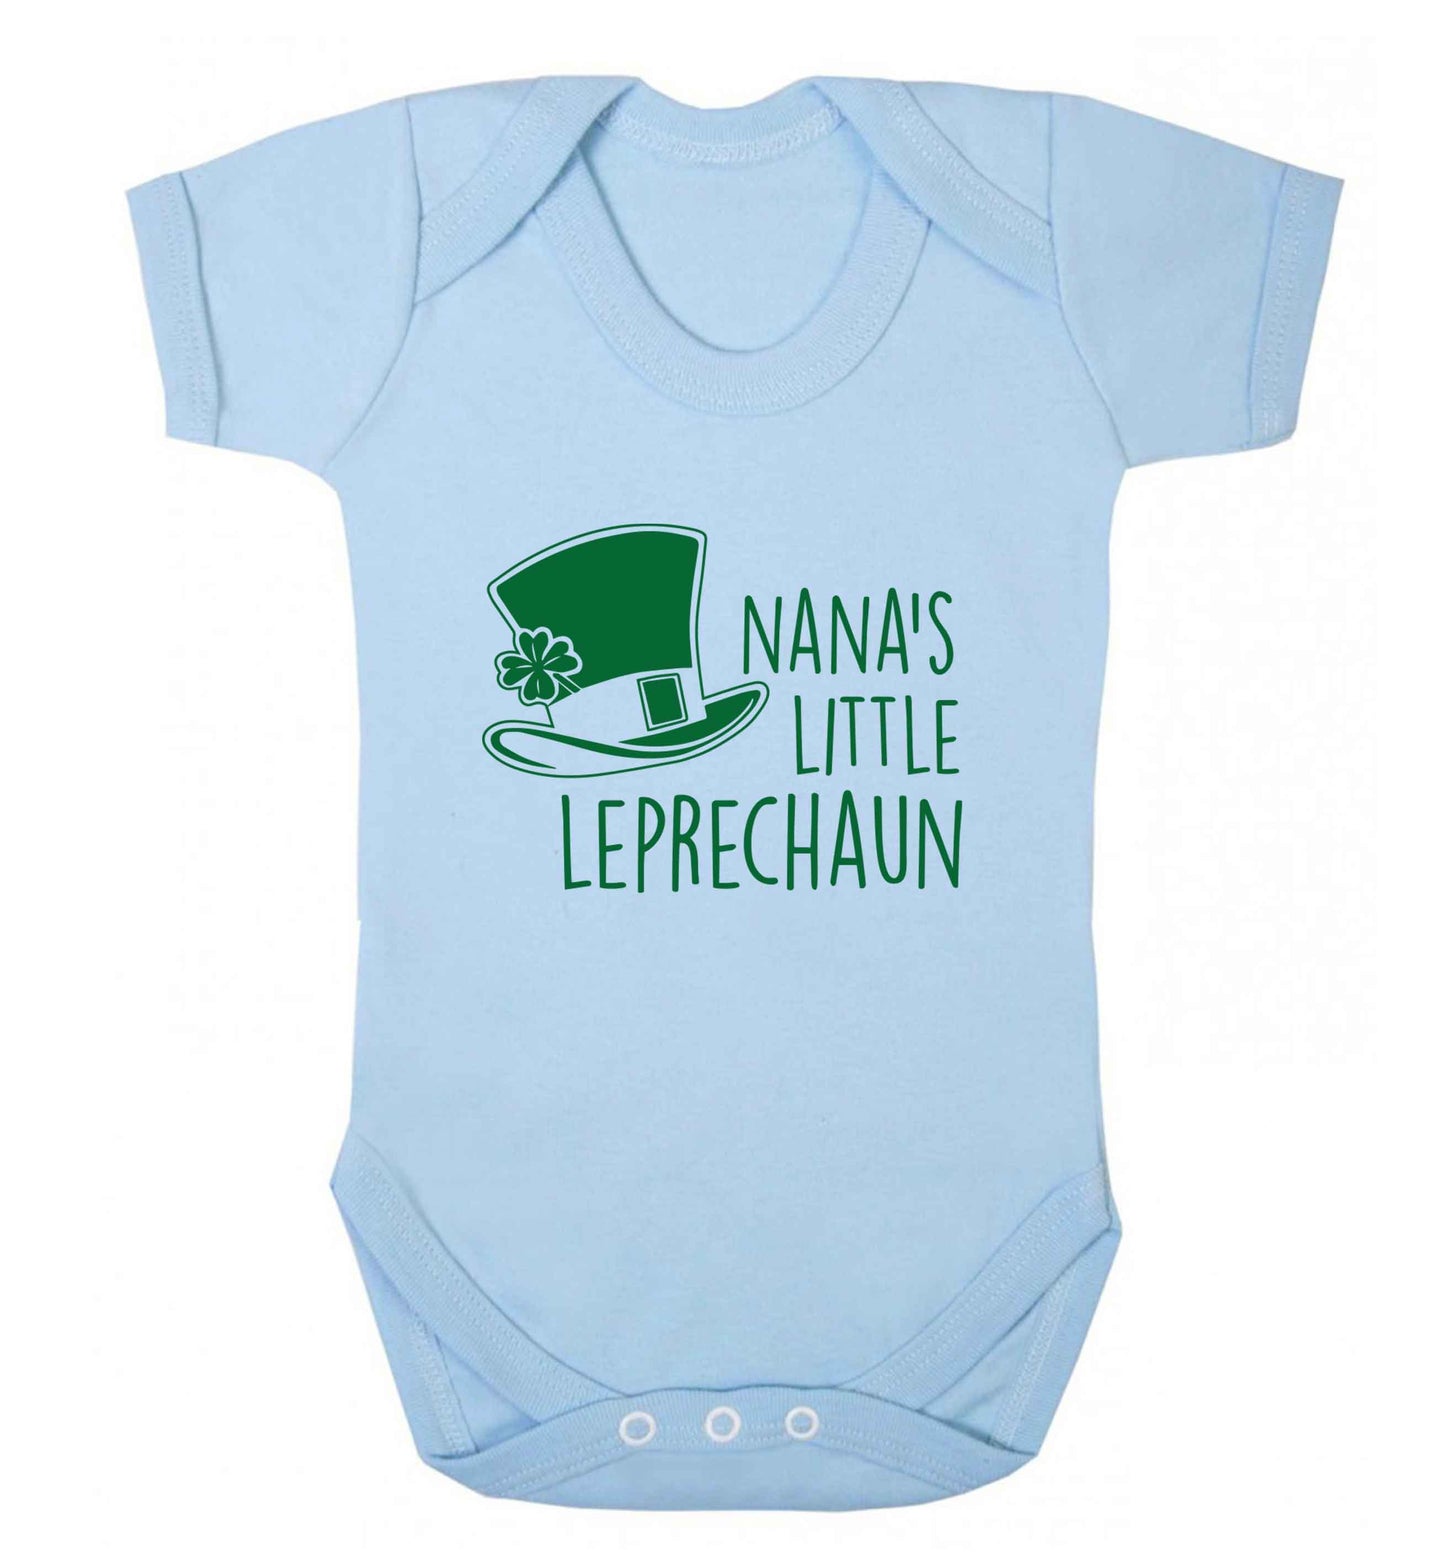 Nana's little leprechaun baby vest pale blue 18-24 months